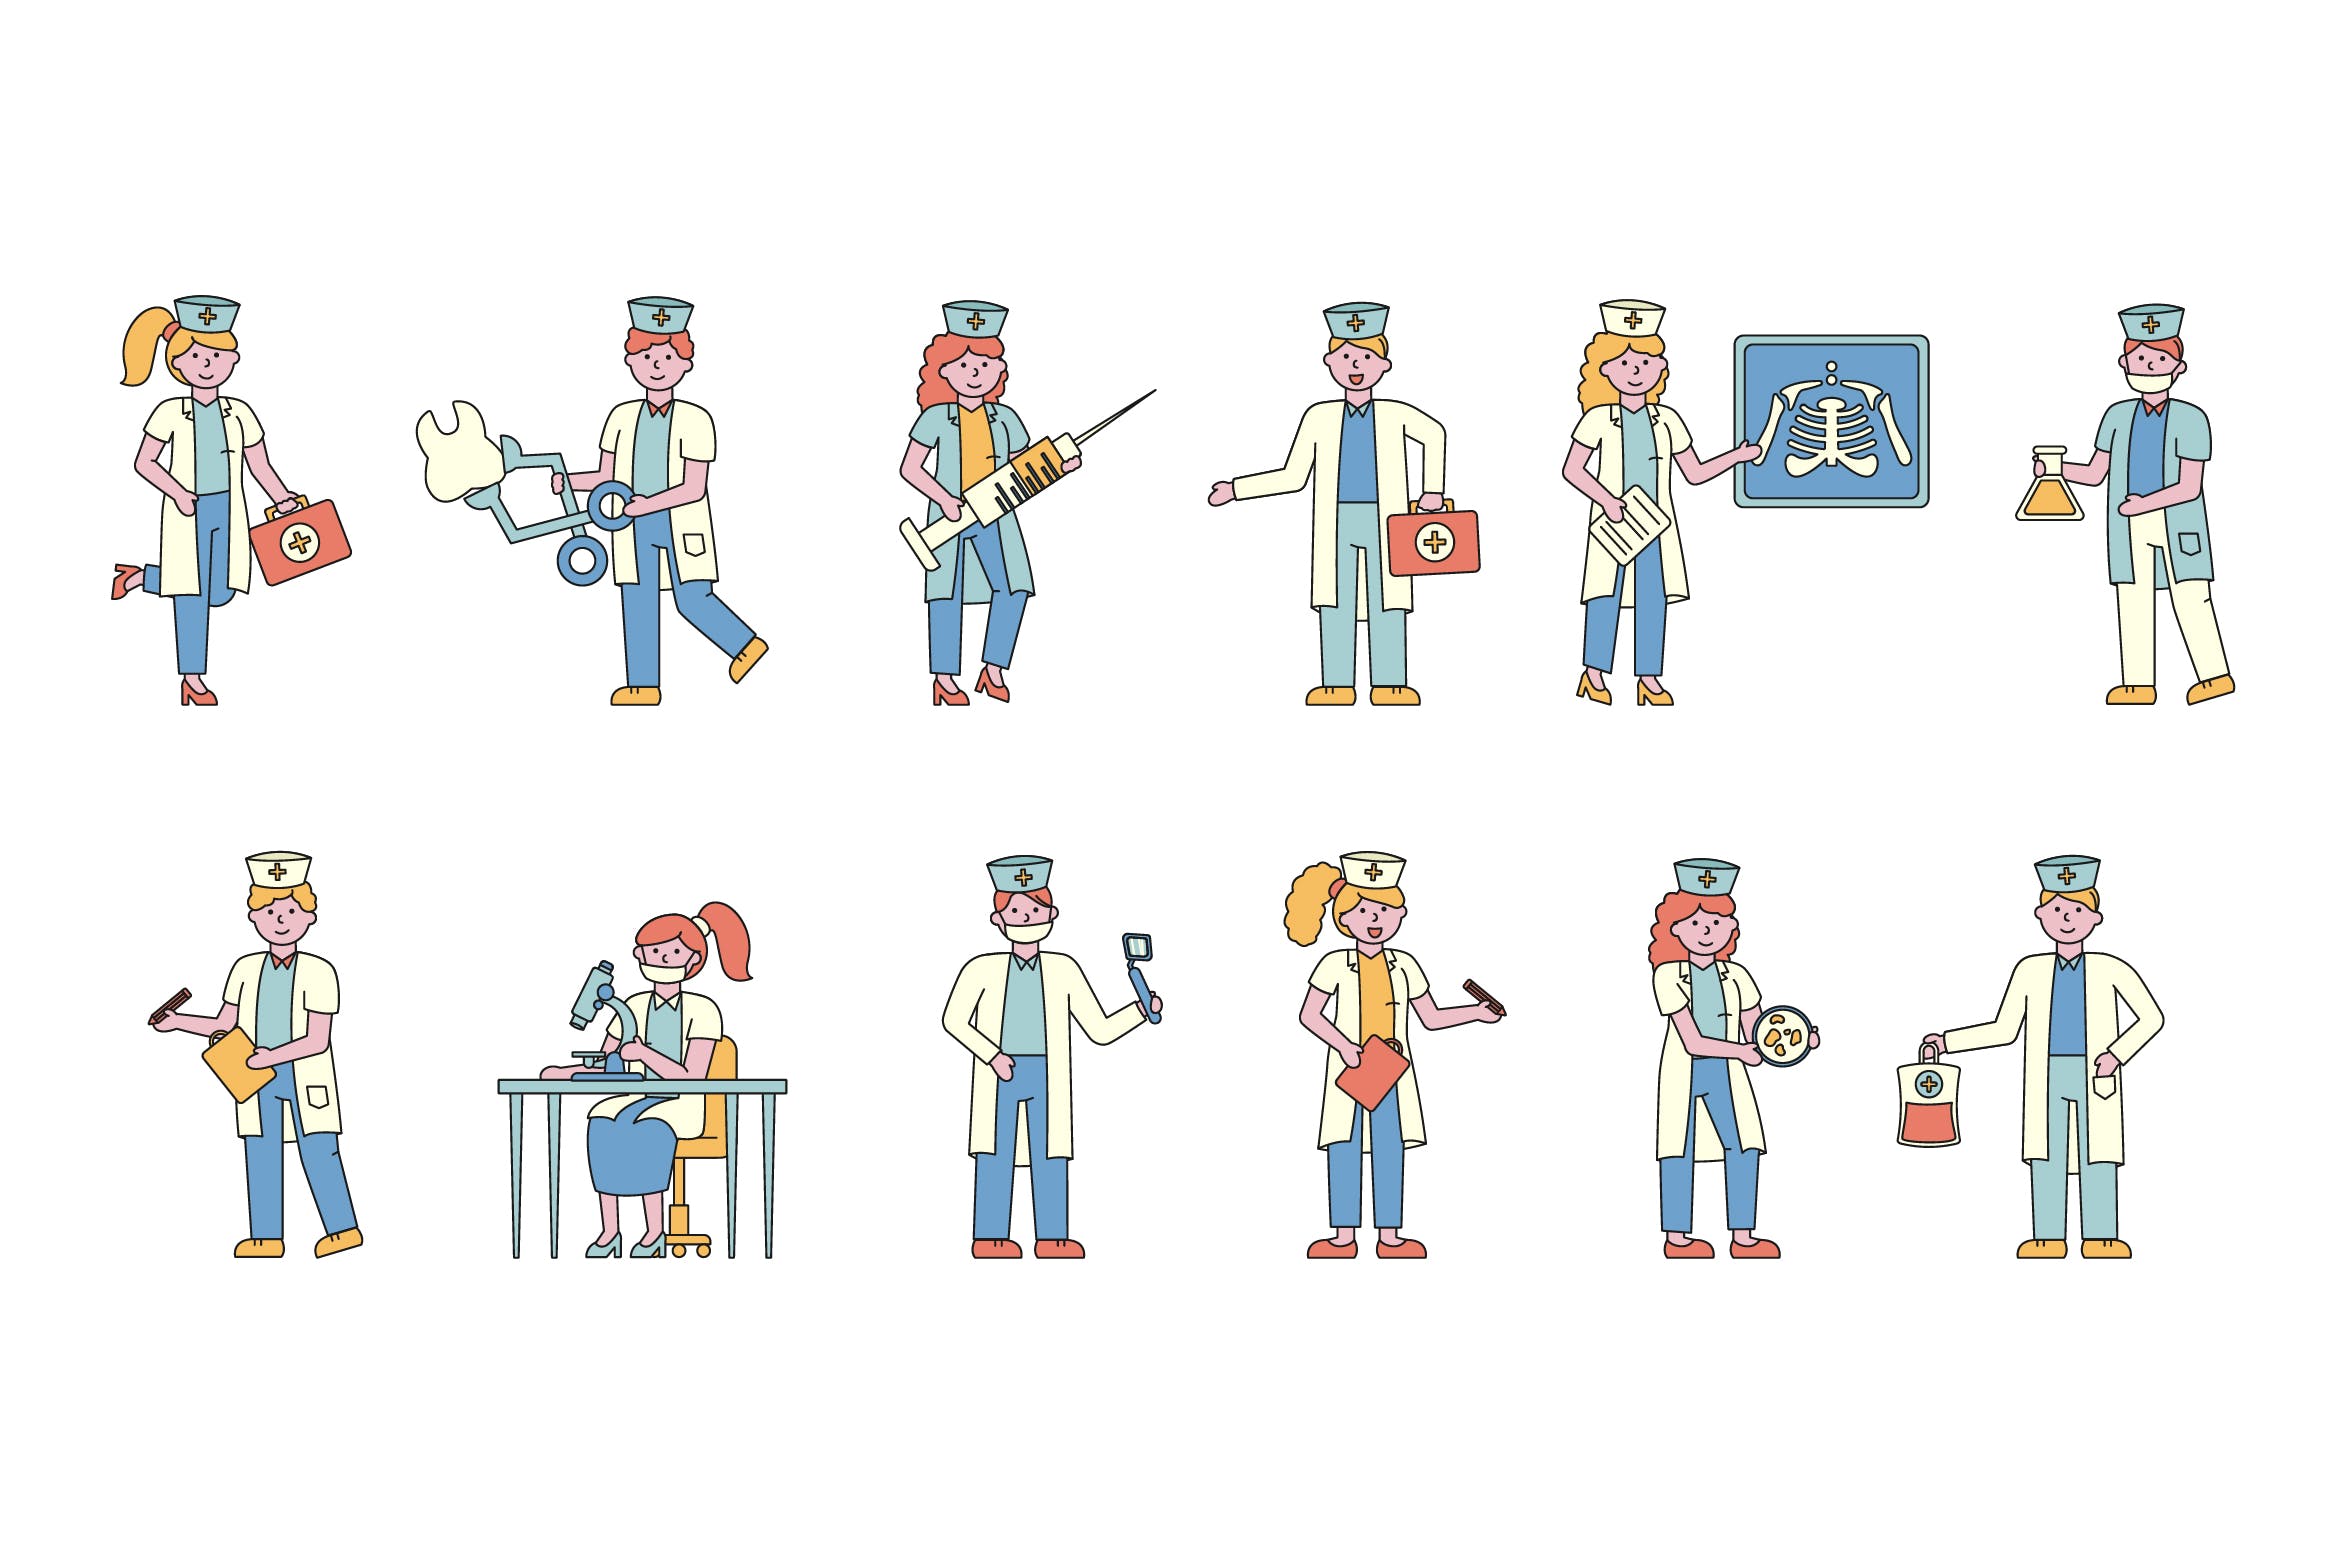 医院医疗人物形象线条艺术矢量插画素材库精选素材 Medical Lineart People Character Collection插图